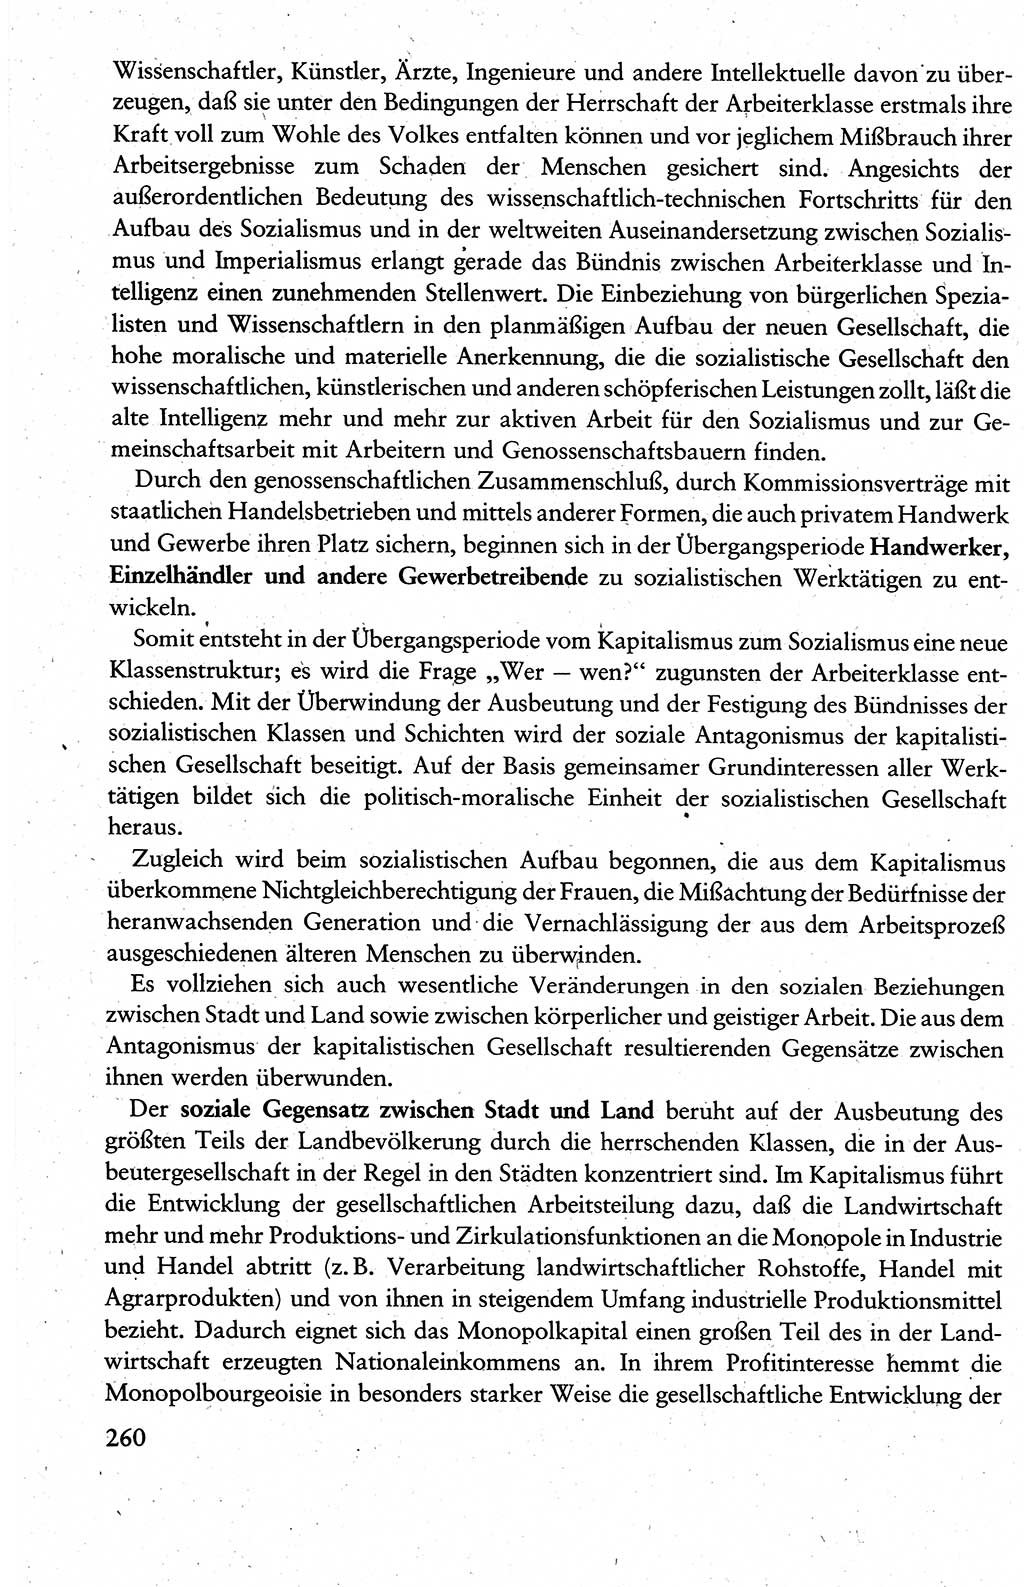 Wissenschaftlicher Kommunismus [Deutsche Demokratische Republik (DDR)], Lehrbuch für das marxistisch-leninistische Grundlagenstudium 1983, Seite 260 (Wiss. Komm. DDR Lb. 1983, S. 260)